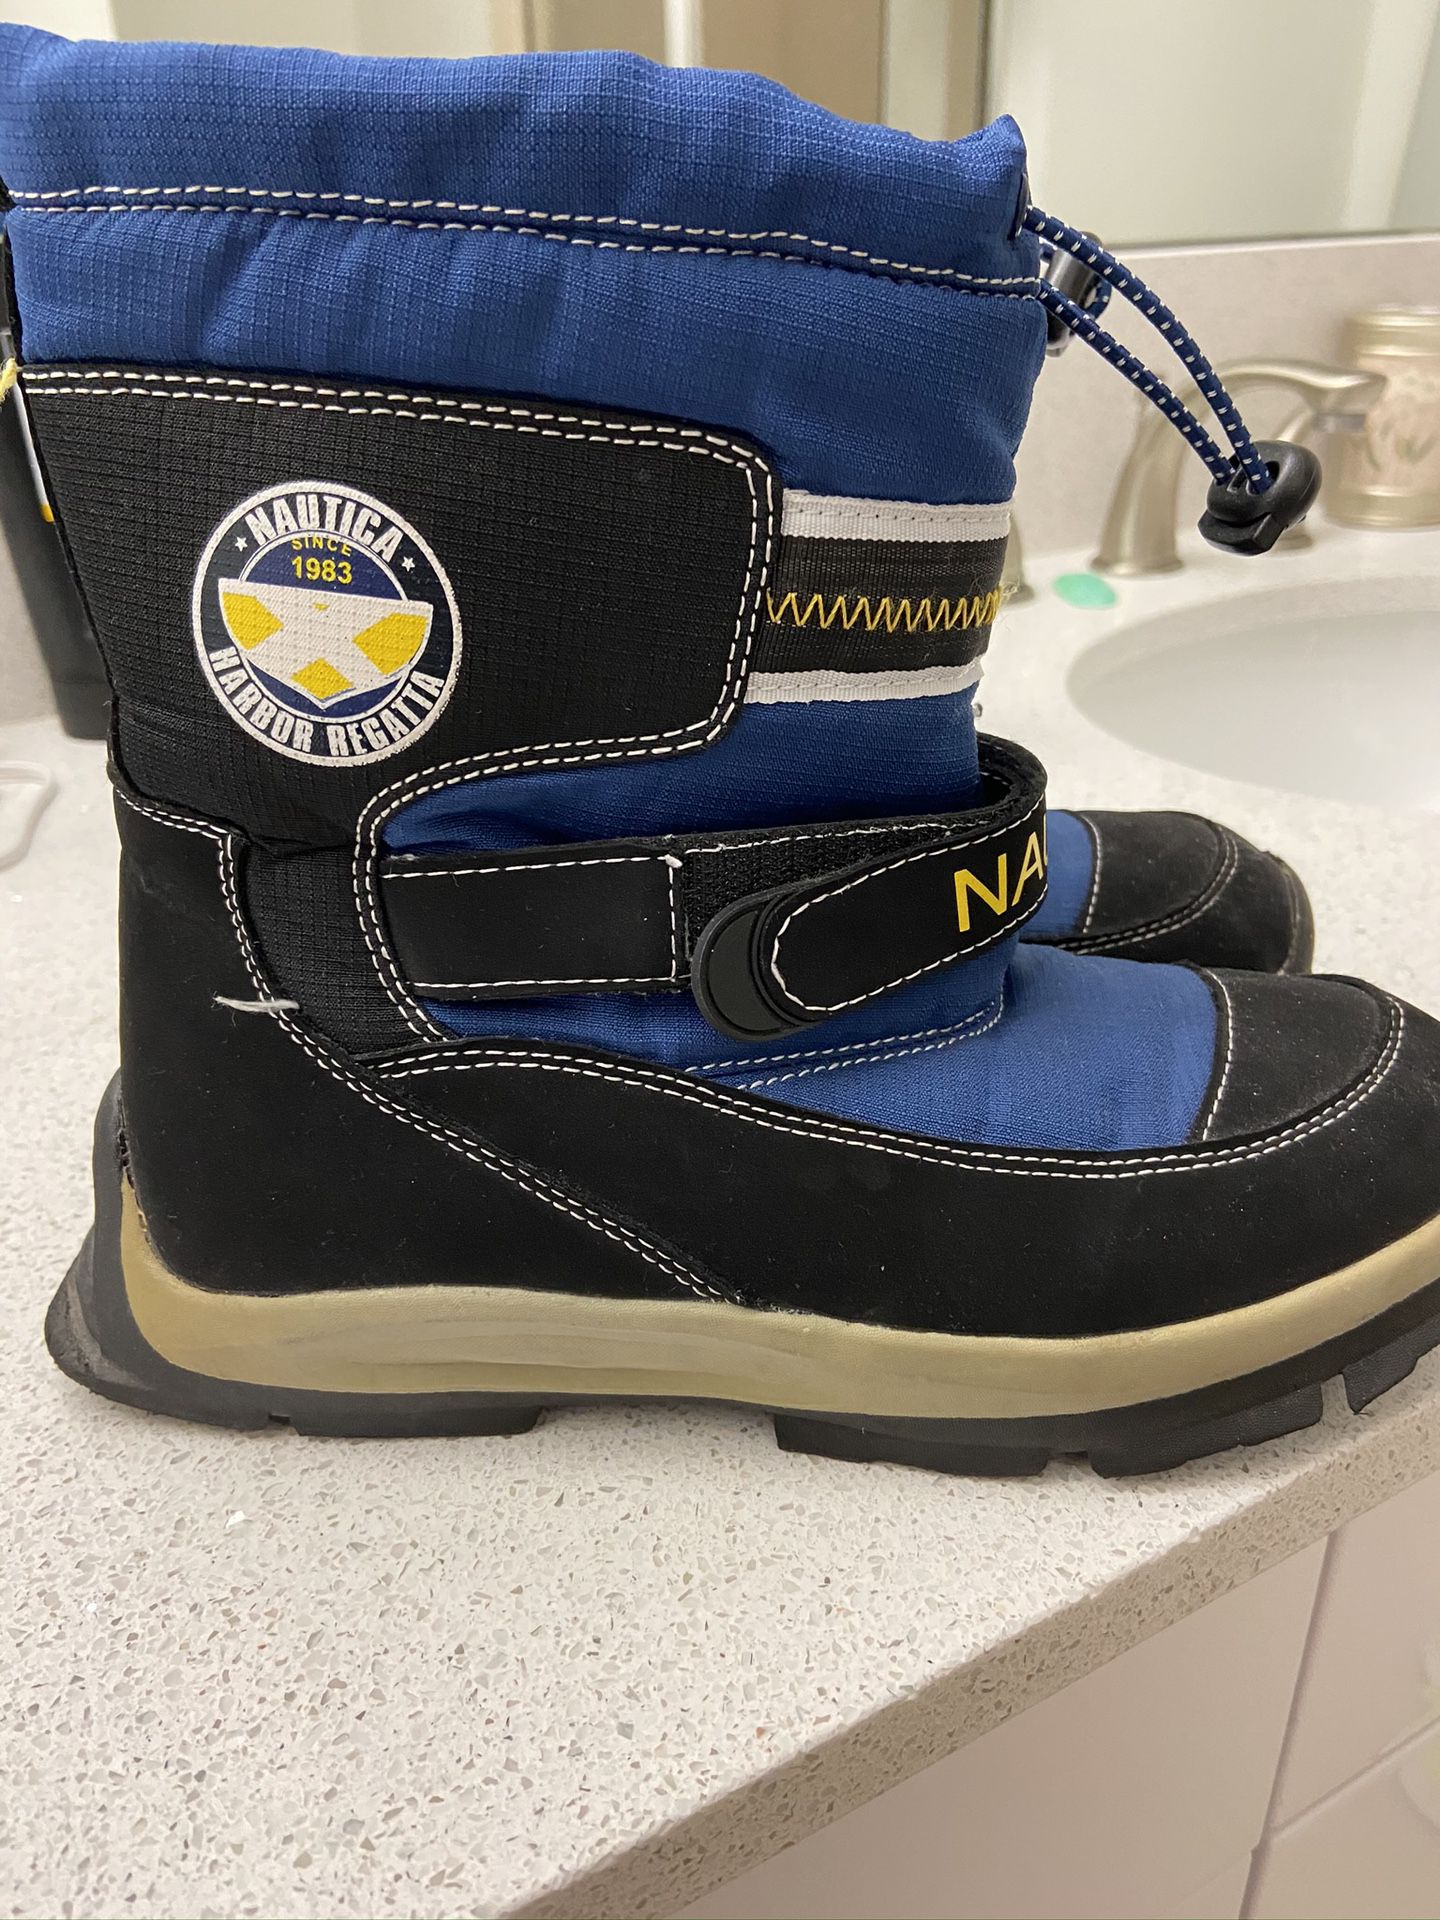 Náutica rain snow boots size 5 us